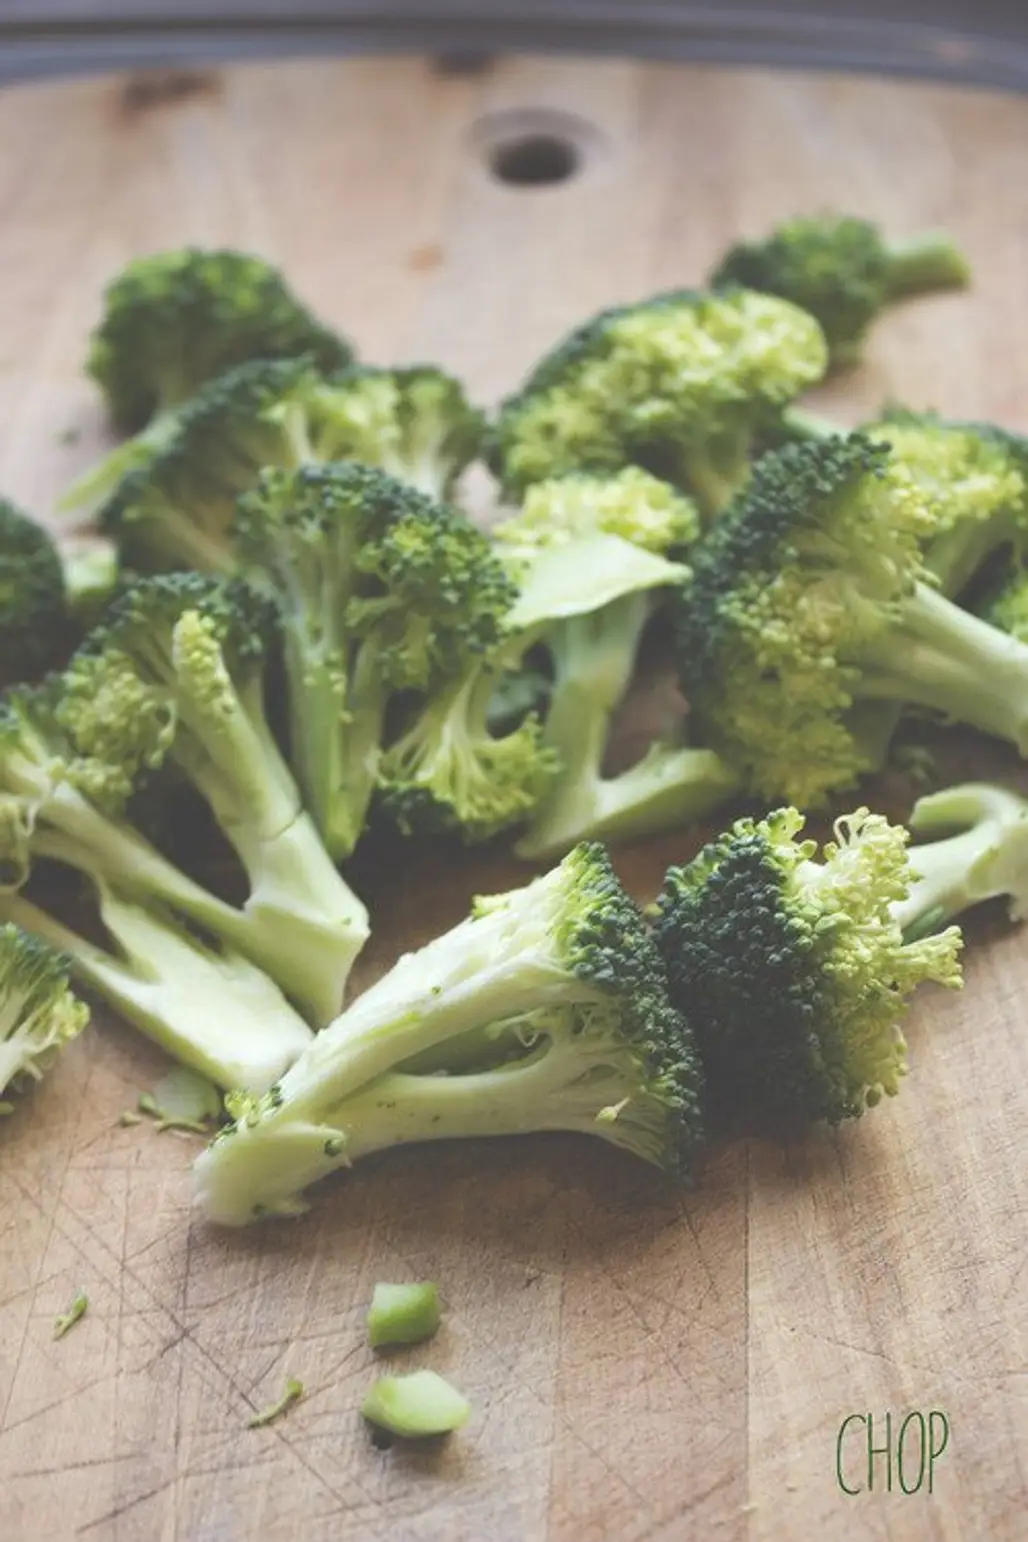 food,vegetable,produce,broccoli,leaf vegetable,